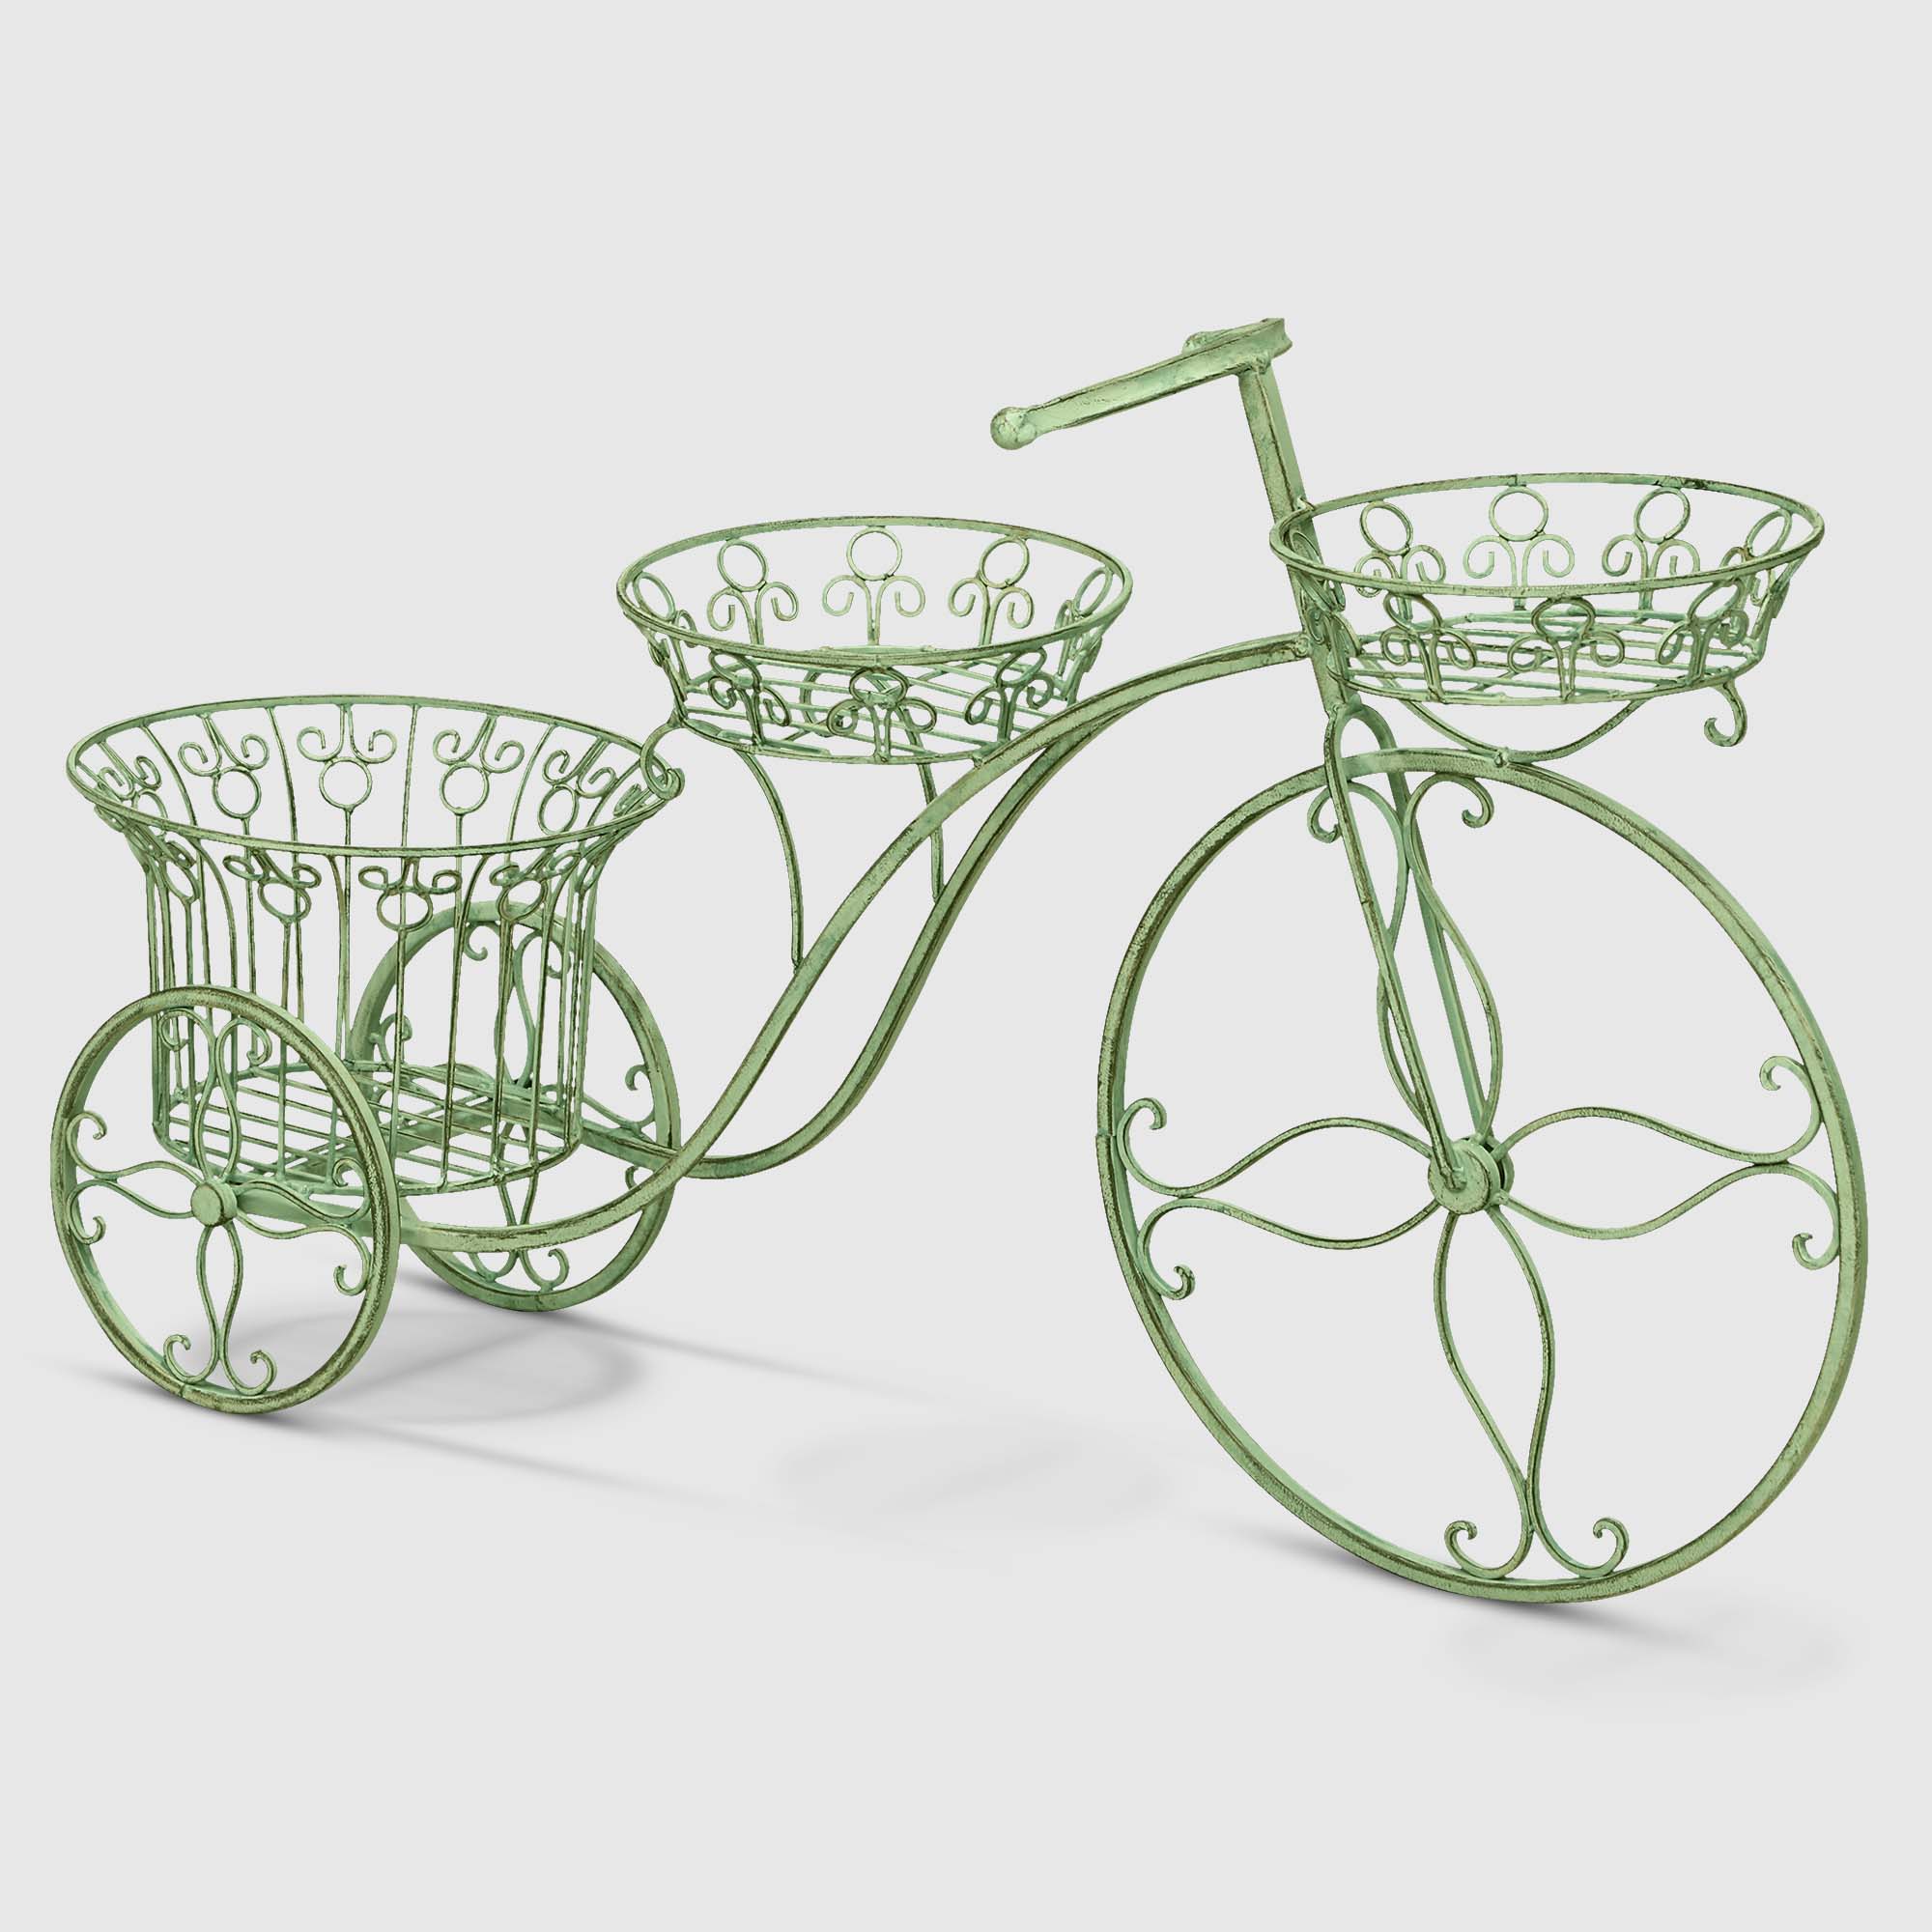 Подставка для цветов Anxi jiacheng велосипед оливковый 95x53x27 см подставка для цветов на колёсиках доляна 32×32×10 см цвет хром